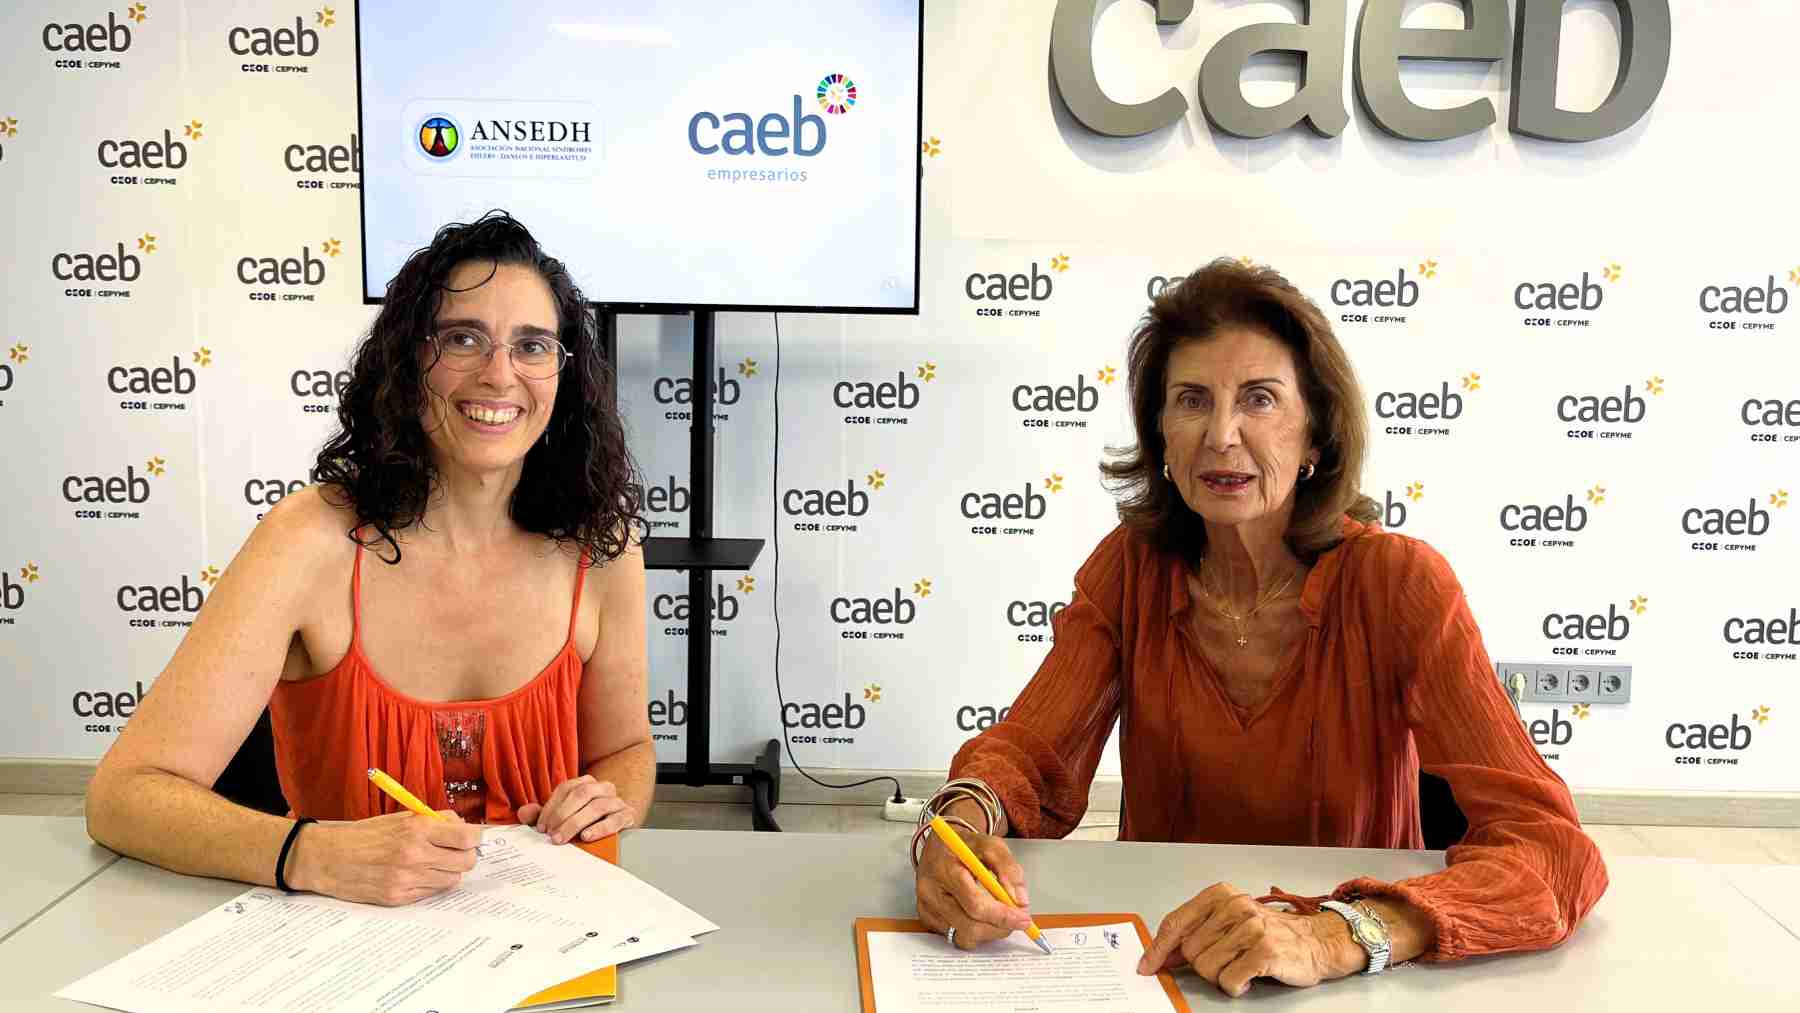 CAEB ha iniciado un acuerdo de colaboración con ANSEDH.